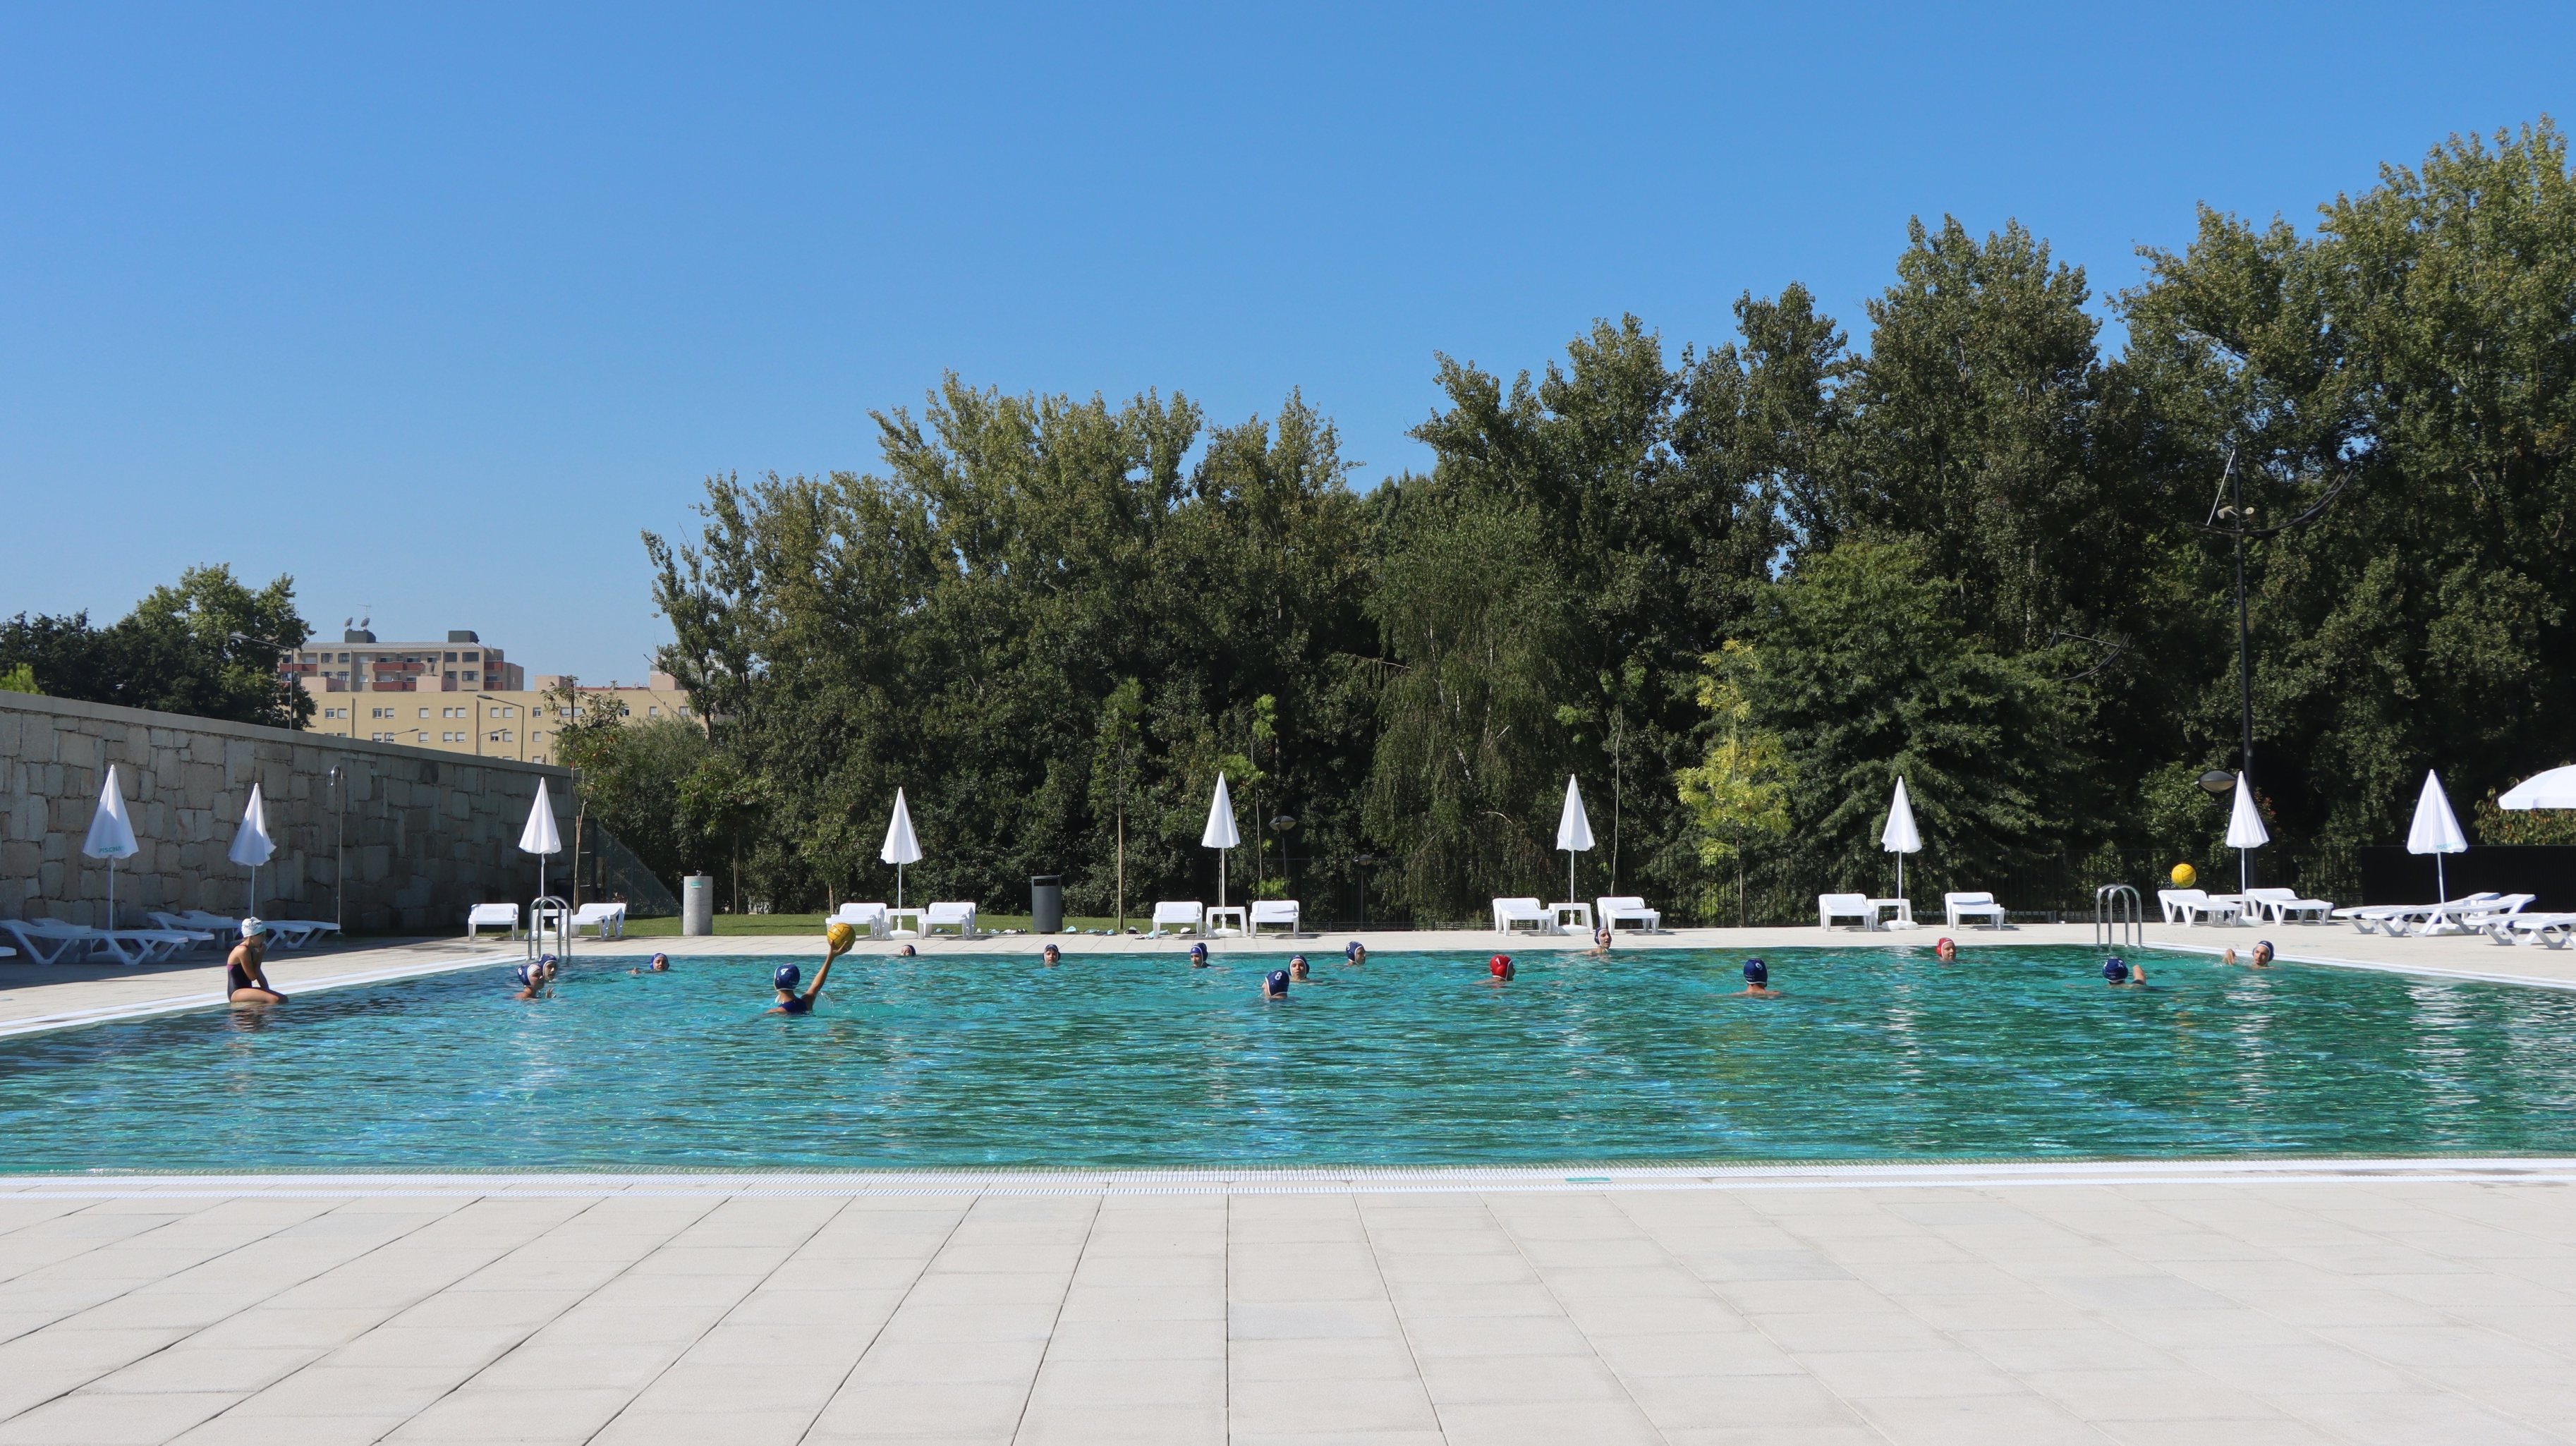 Em Paredes nasceu uma piscina num parque urbano que promete refrescar miúdos e graúdos em dias de sol